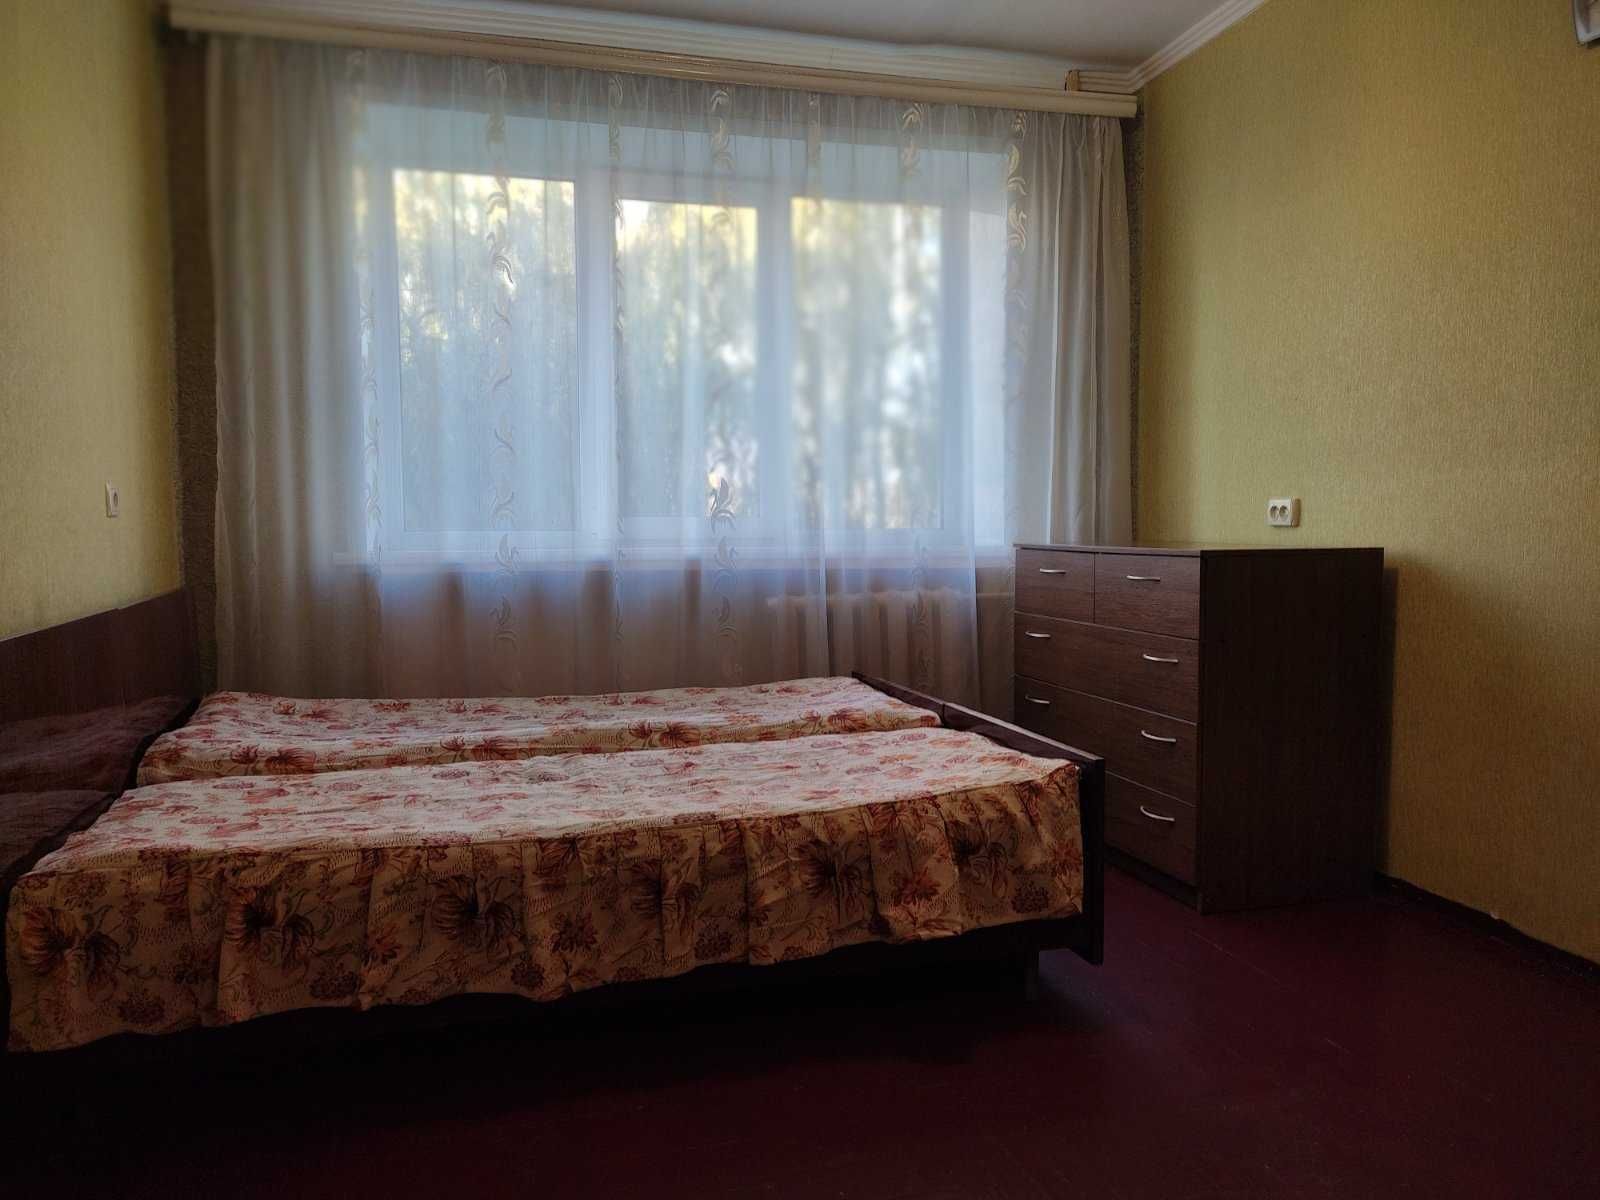 Продам 2 смежные комнаты в общежитии ул. Пархоменко ТОРГ